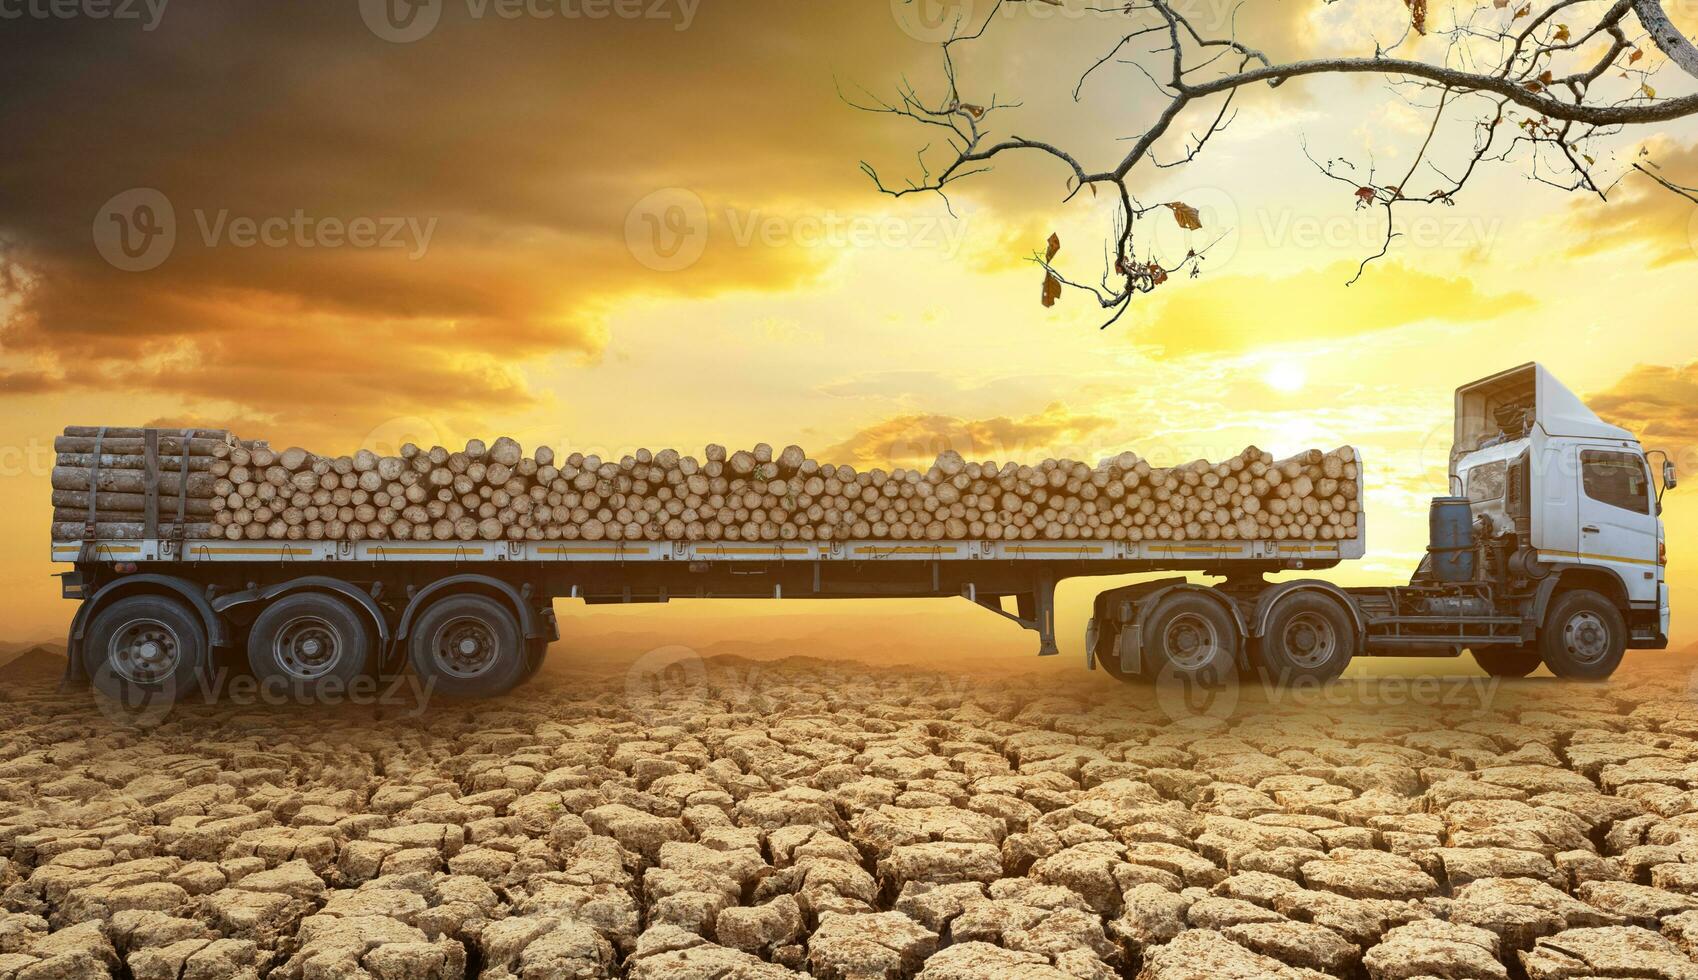 Camions de bois chargés arrivant et stationnés sur le sol fissuré dans les zones arides d'un paysage au coucher du soleil et fond de nuages photo